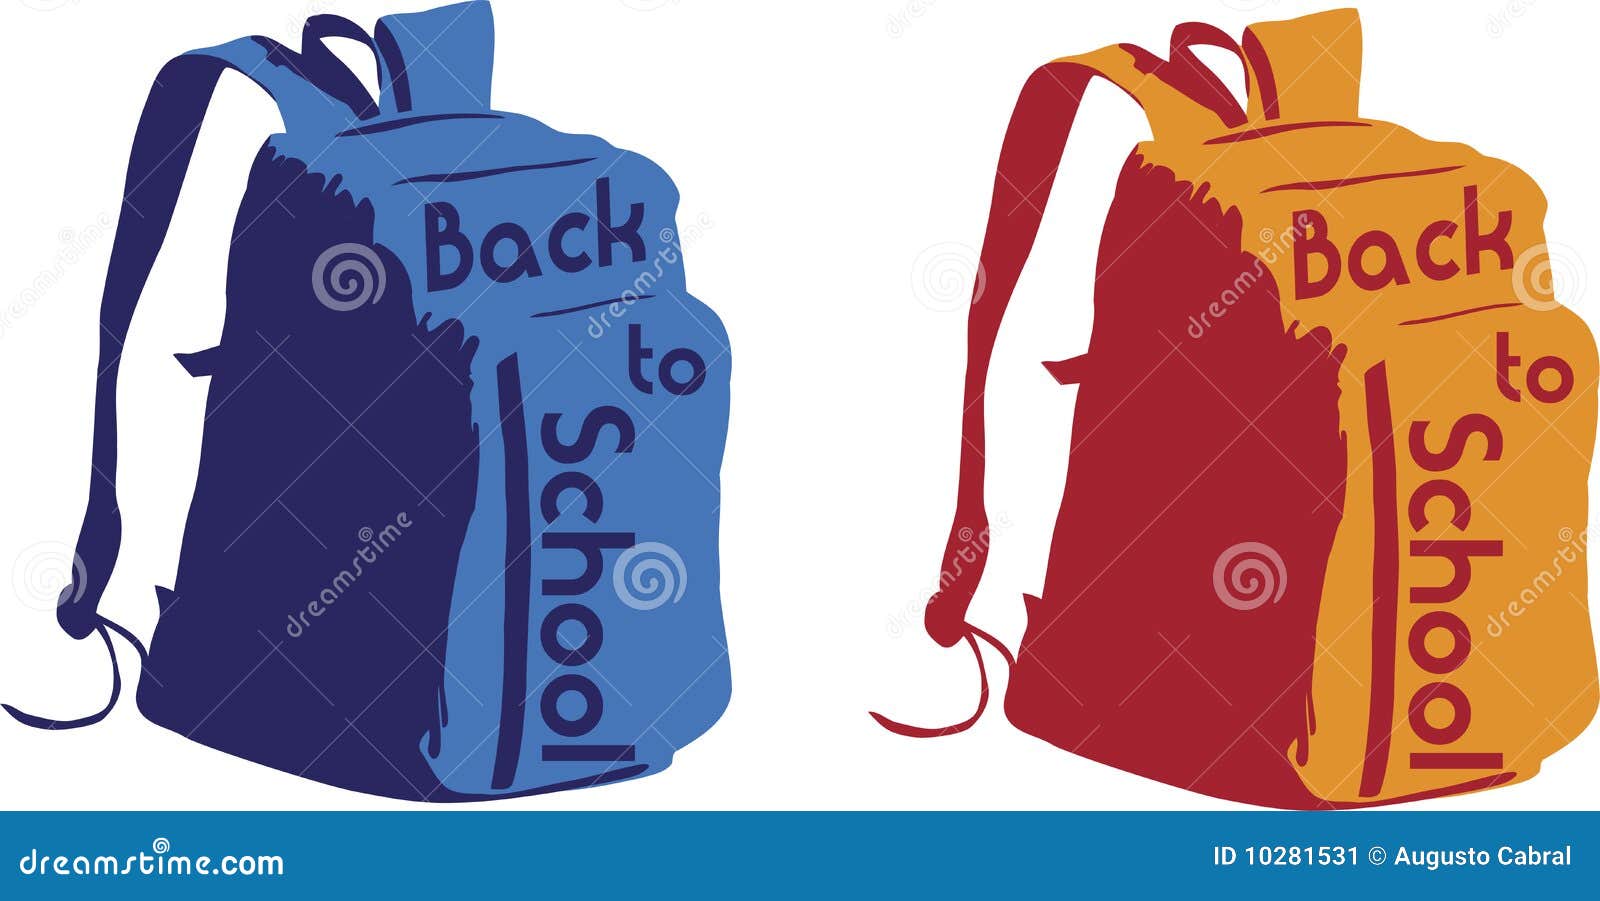 Plain Backpack Stock Illustrations – 245 Plain Backpack Stock  Illustrations, Vectors & Clipart - Dreamstime